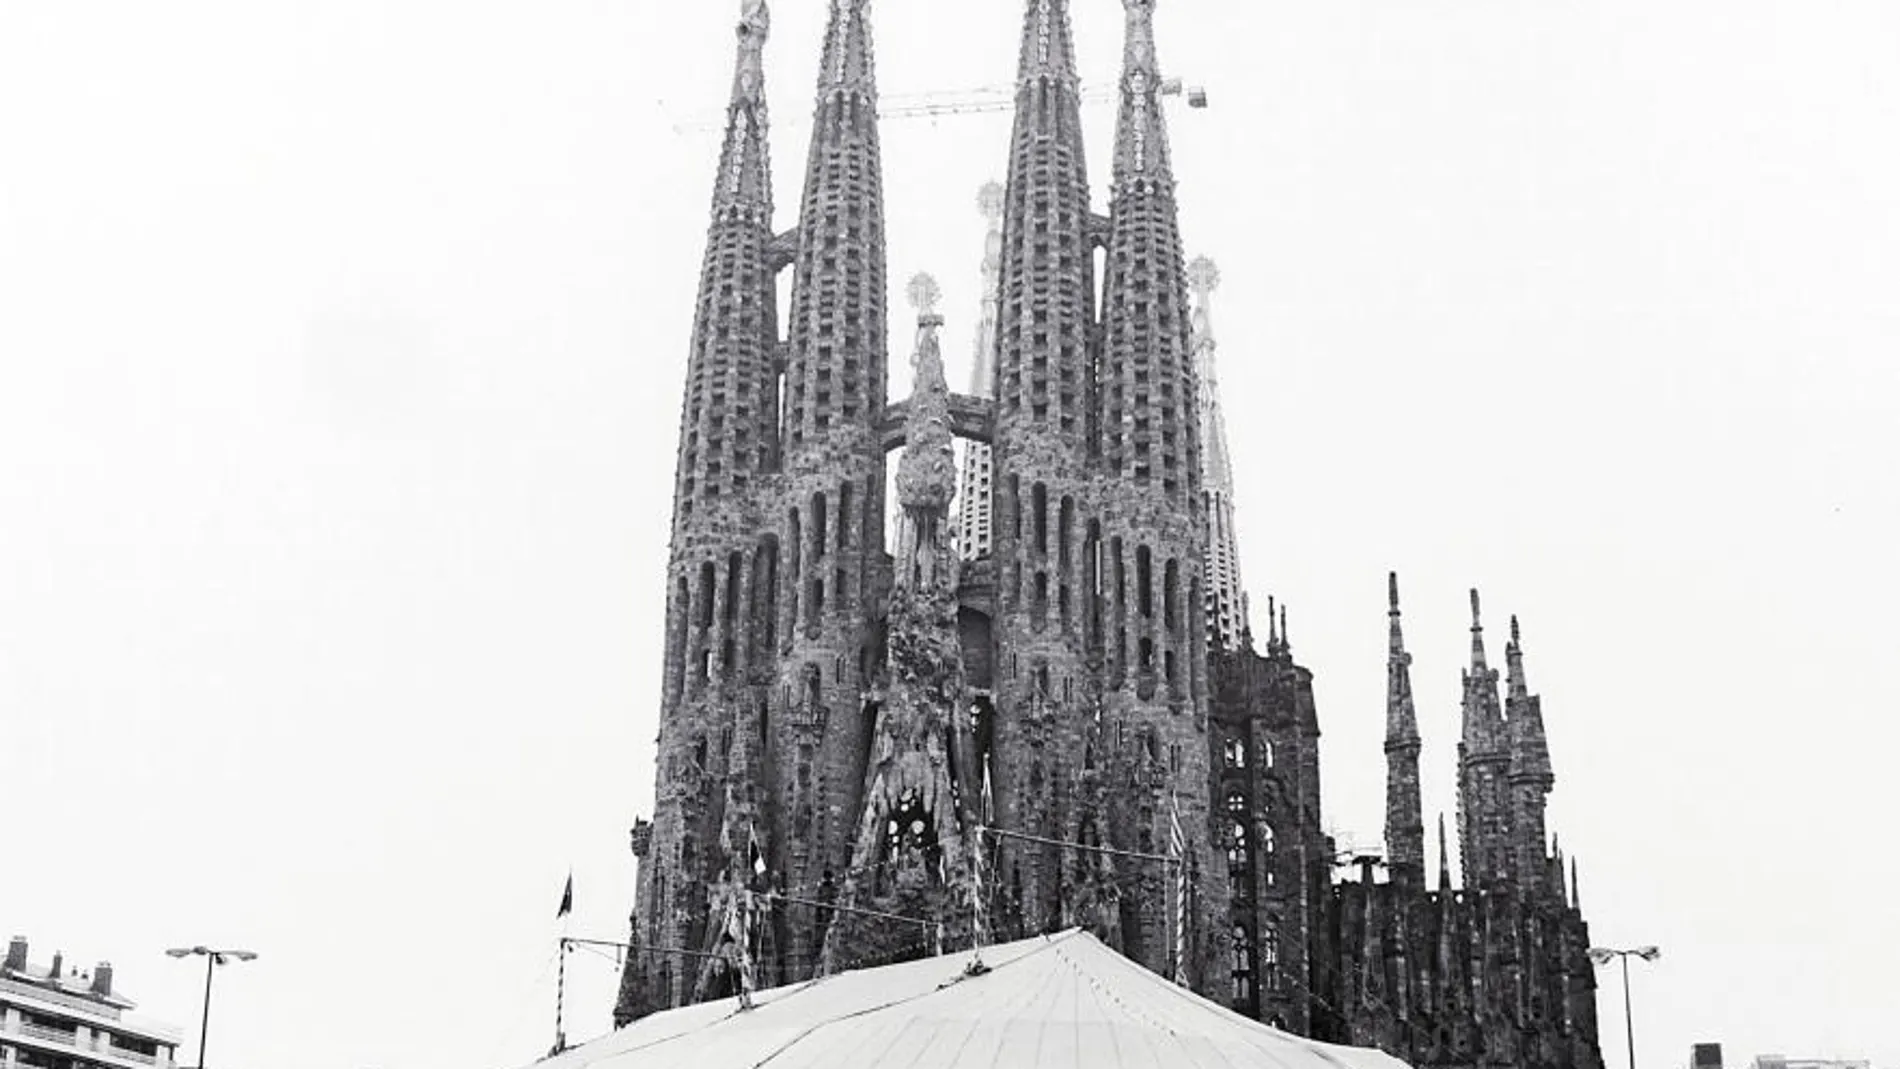 Un espectáculo al alcance de todos. Una imagen del Circo Ringland instalando frente a la Sagrada Familia, durante las fiestas navideñas de 1978-1979. La imagen fue tomada por Josep Vinyes